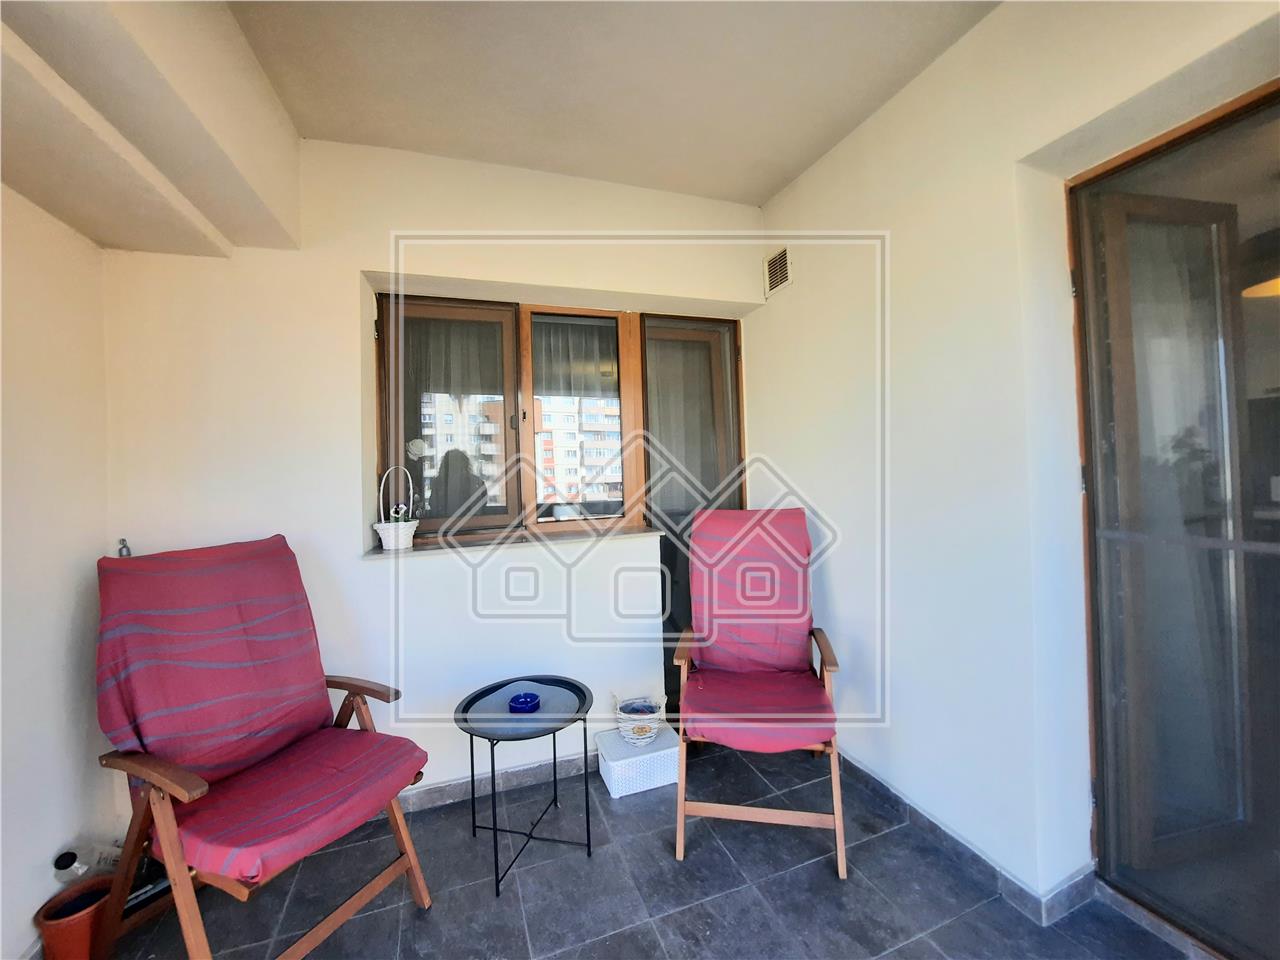 Apartment for sale in Alba Iulia - 3 rooms - 2 balconies - Center